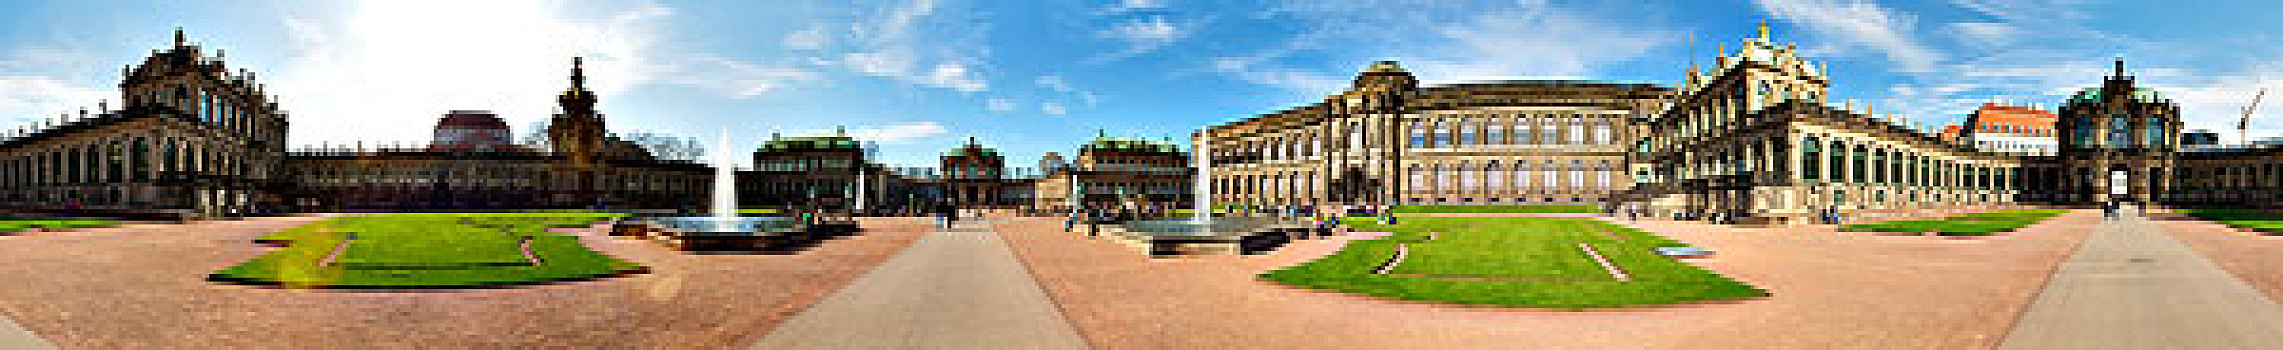 圆柱形,全景,茨温格尔宫,宫殿,德累斯顿,萨克森,德国,欧洲